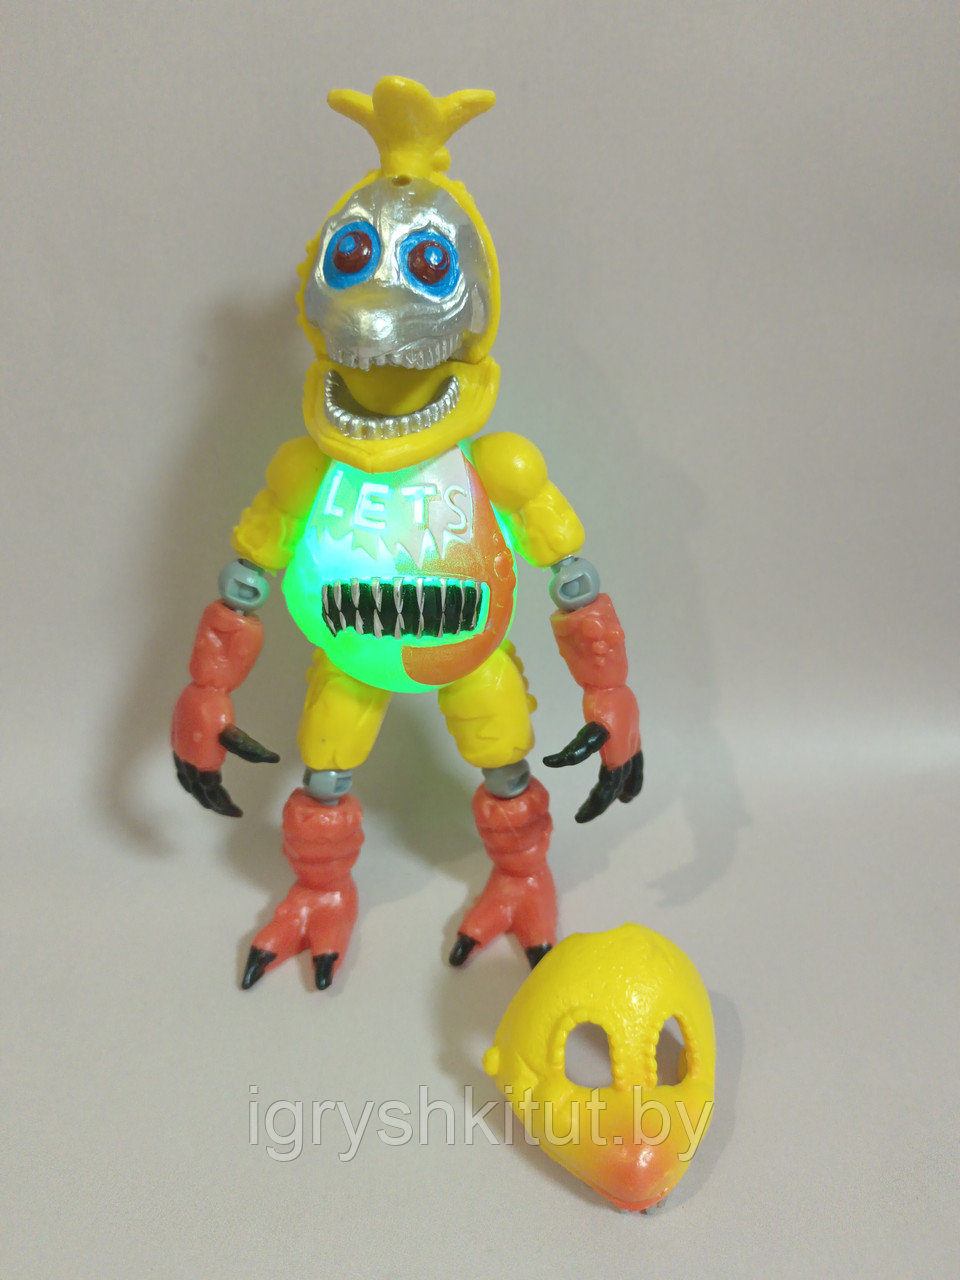 Фигурка Аниматроник с маской, светится, из Five Nights at Freddy's Funko Pop, разные виды